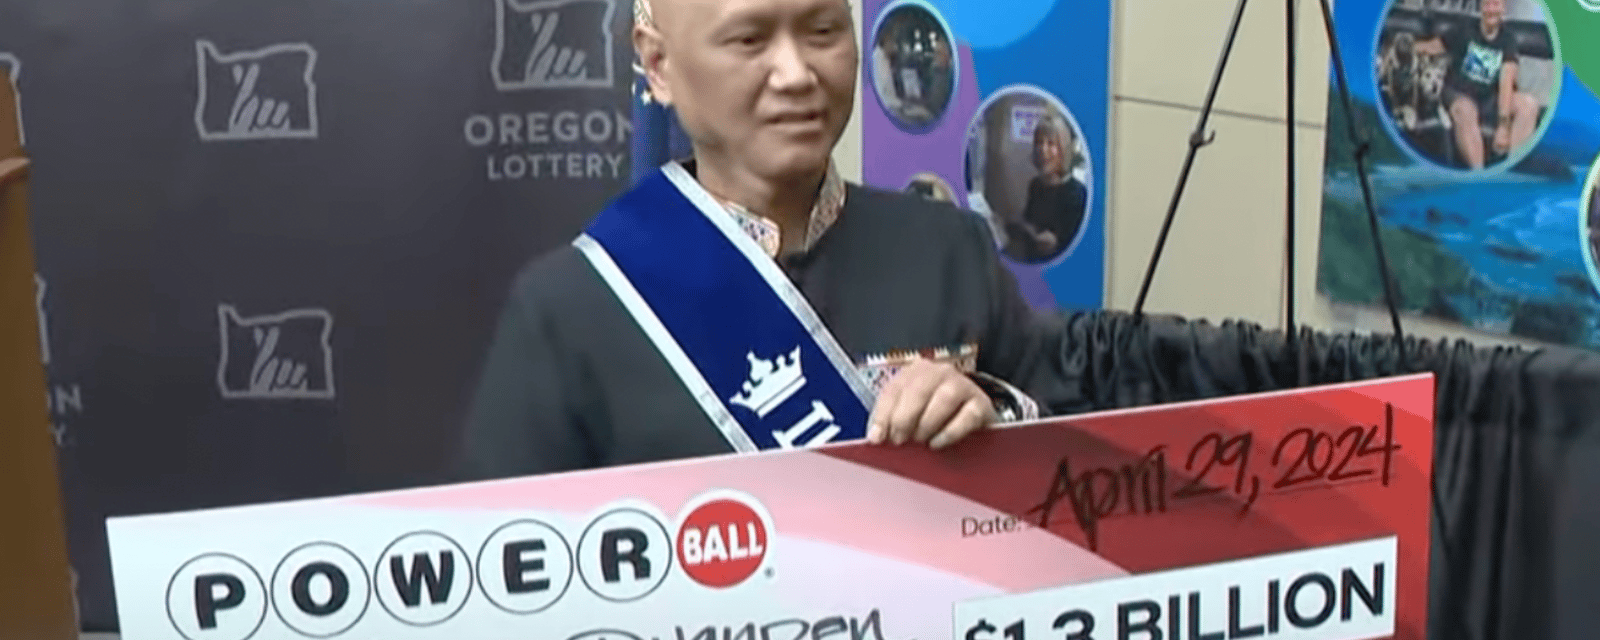 Un homme en phase terminale gagne plus d'un milliard de dollars à la loterie